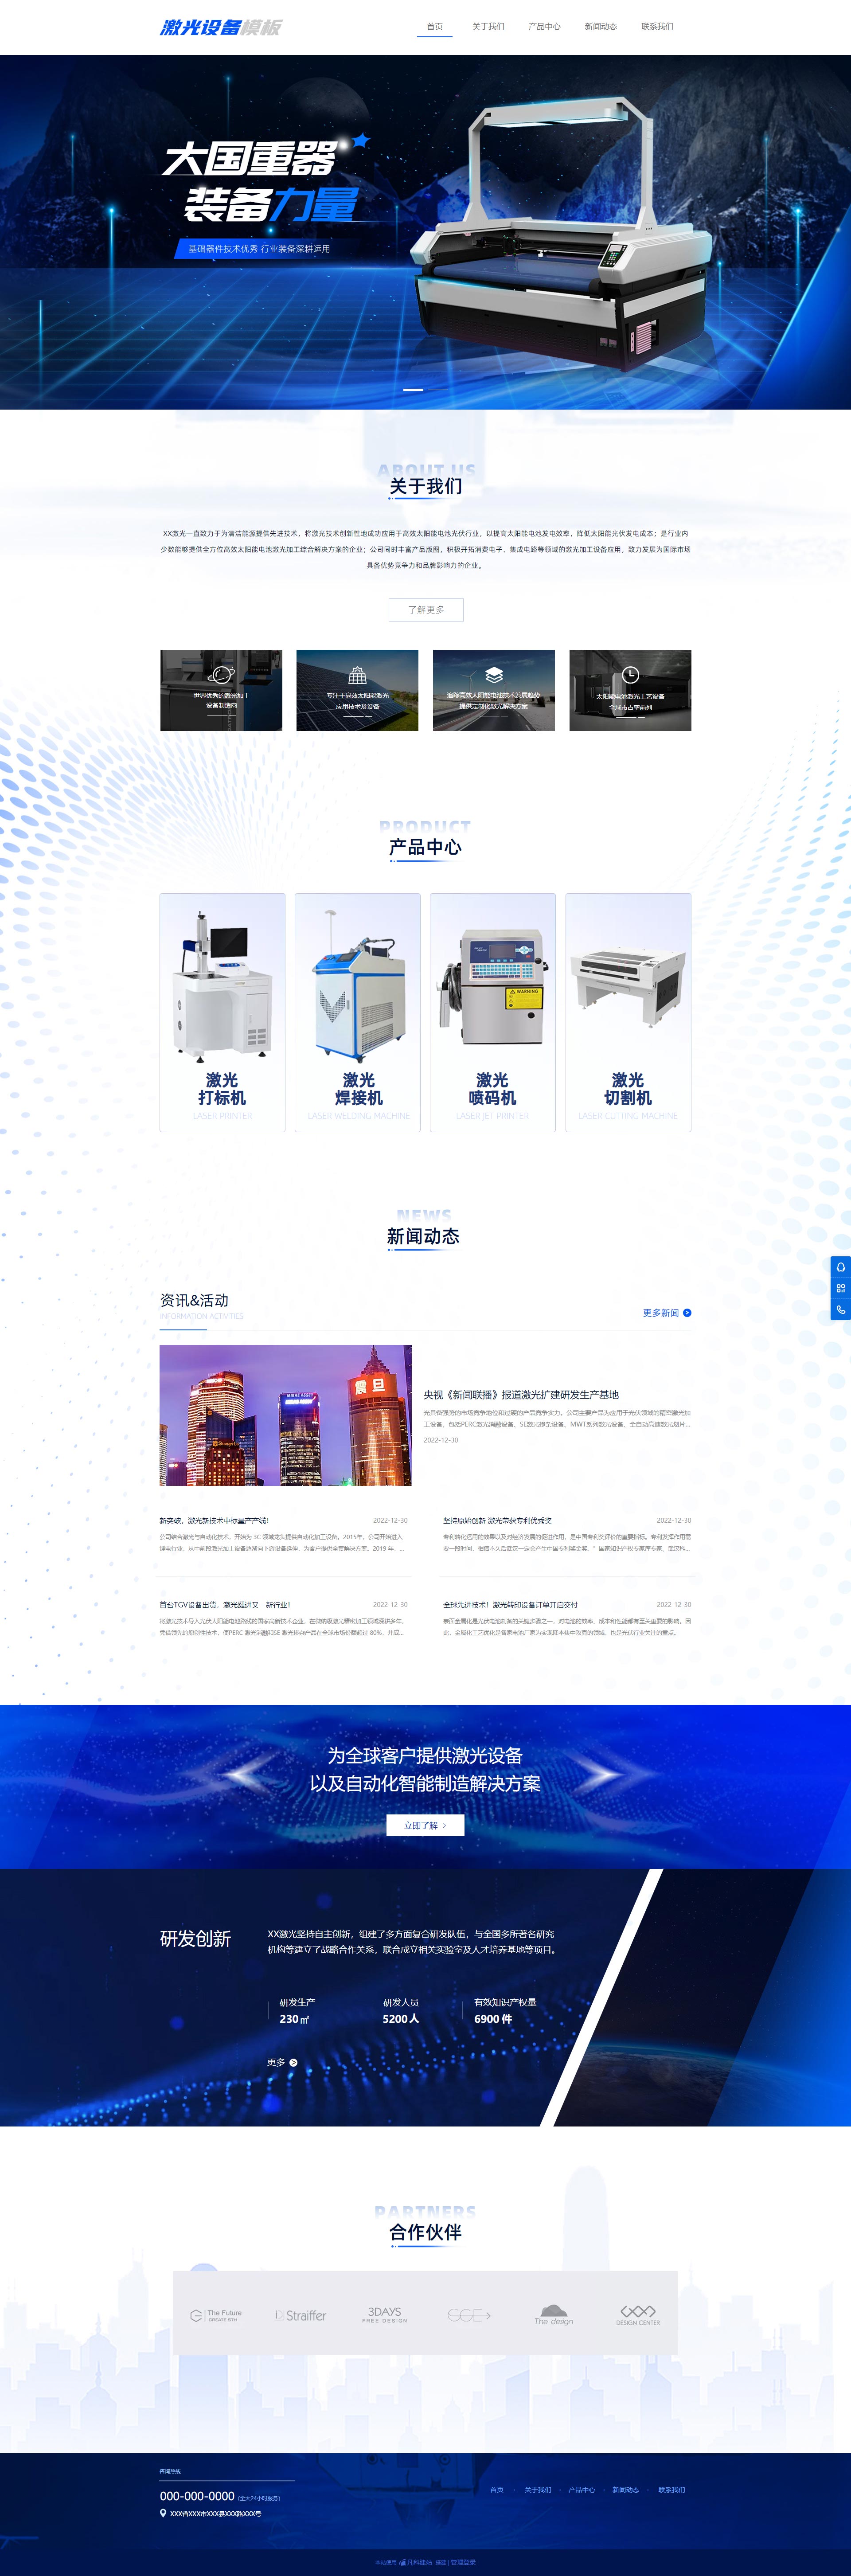 专业机械设备激光设备企业网站模板